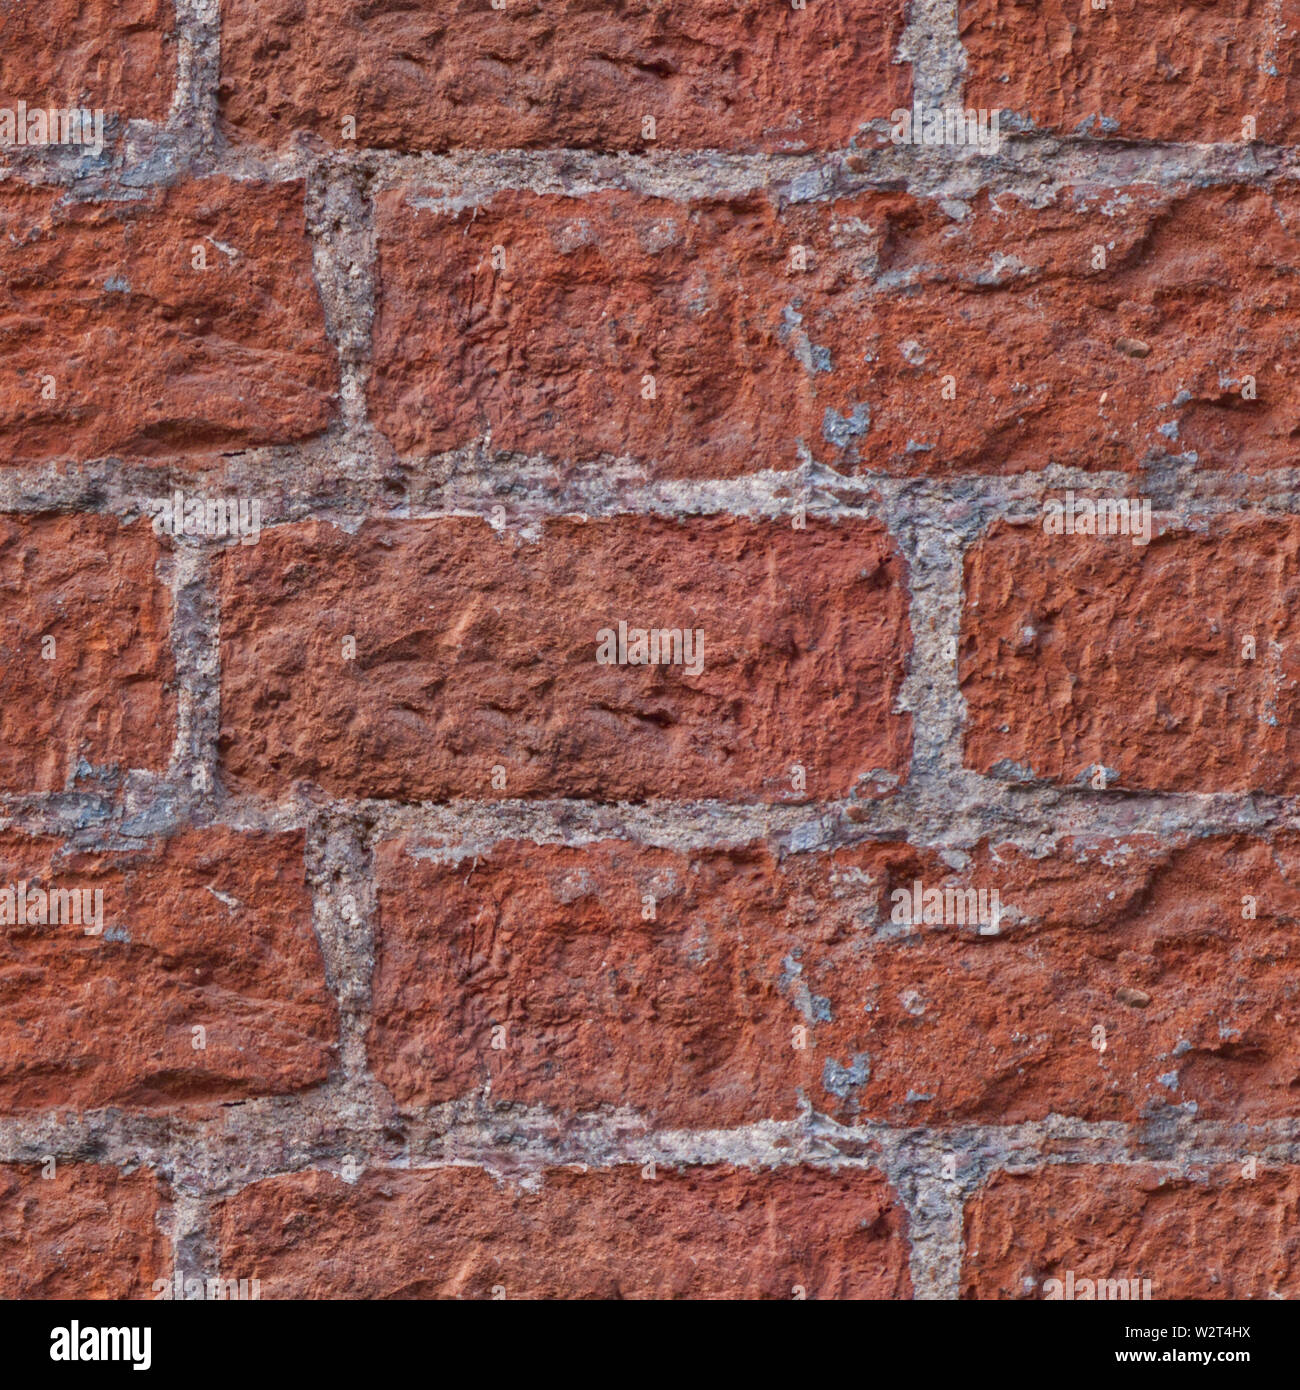 Zusammenfassung nahtlose Textur für Designer mit roten Steinen und Zement. Horizontale Lagen Abbildung. Stockfoto